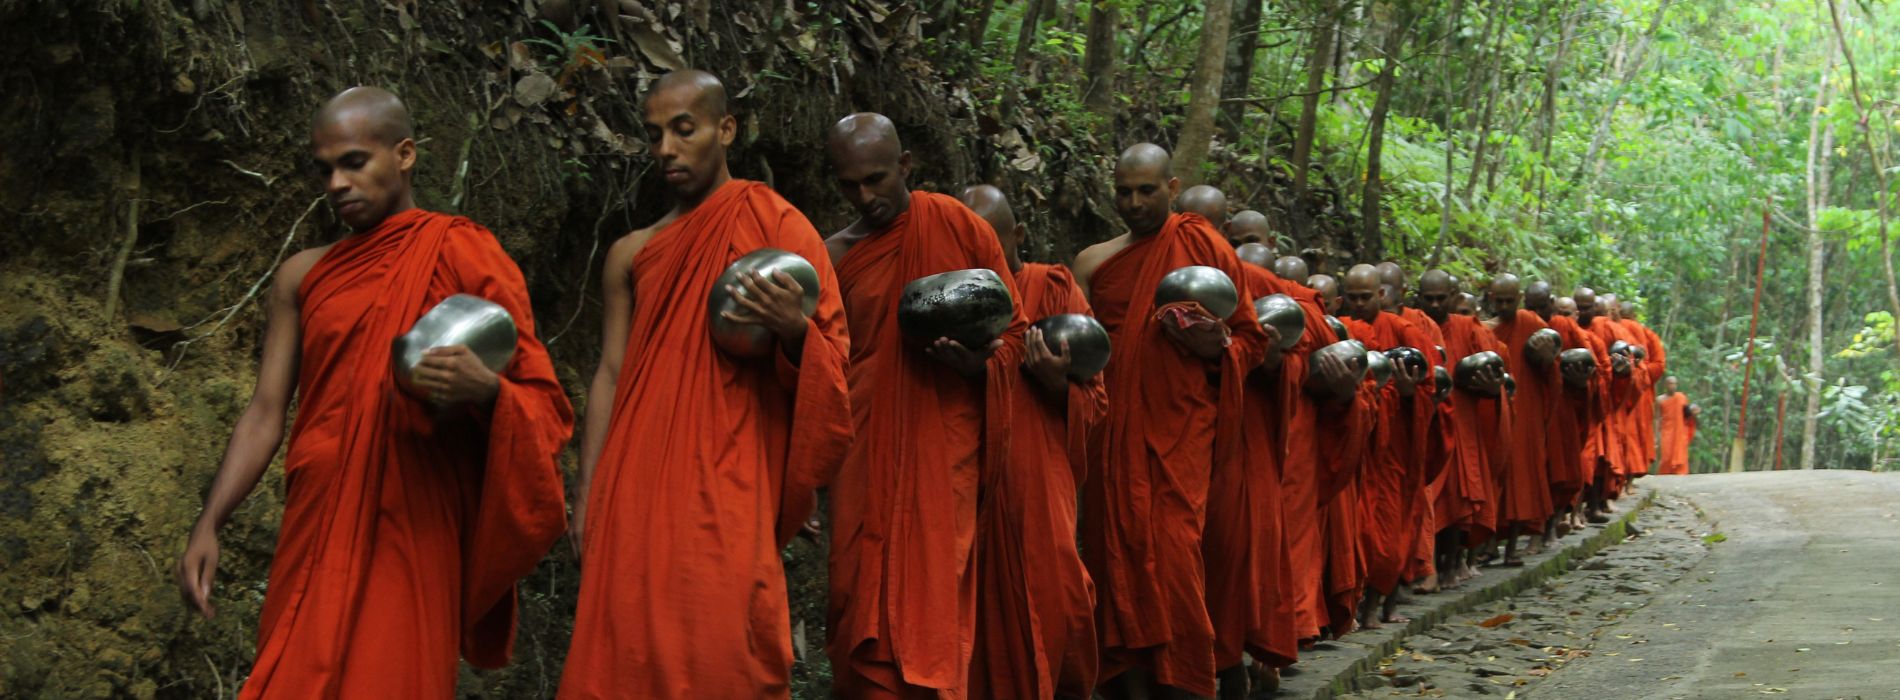 Comment se nomme la communauté des moines bouddhistes ?